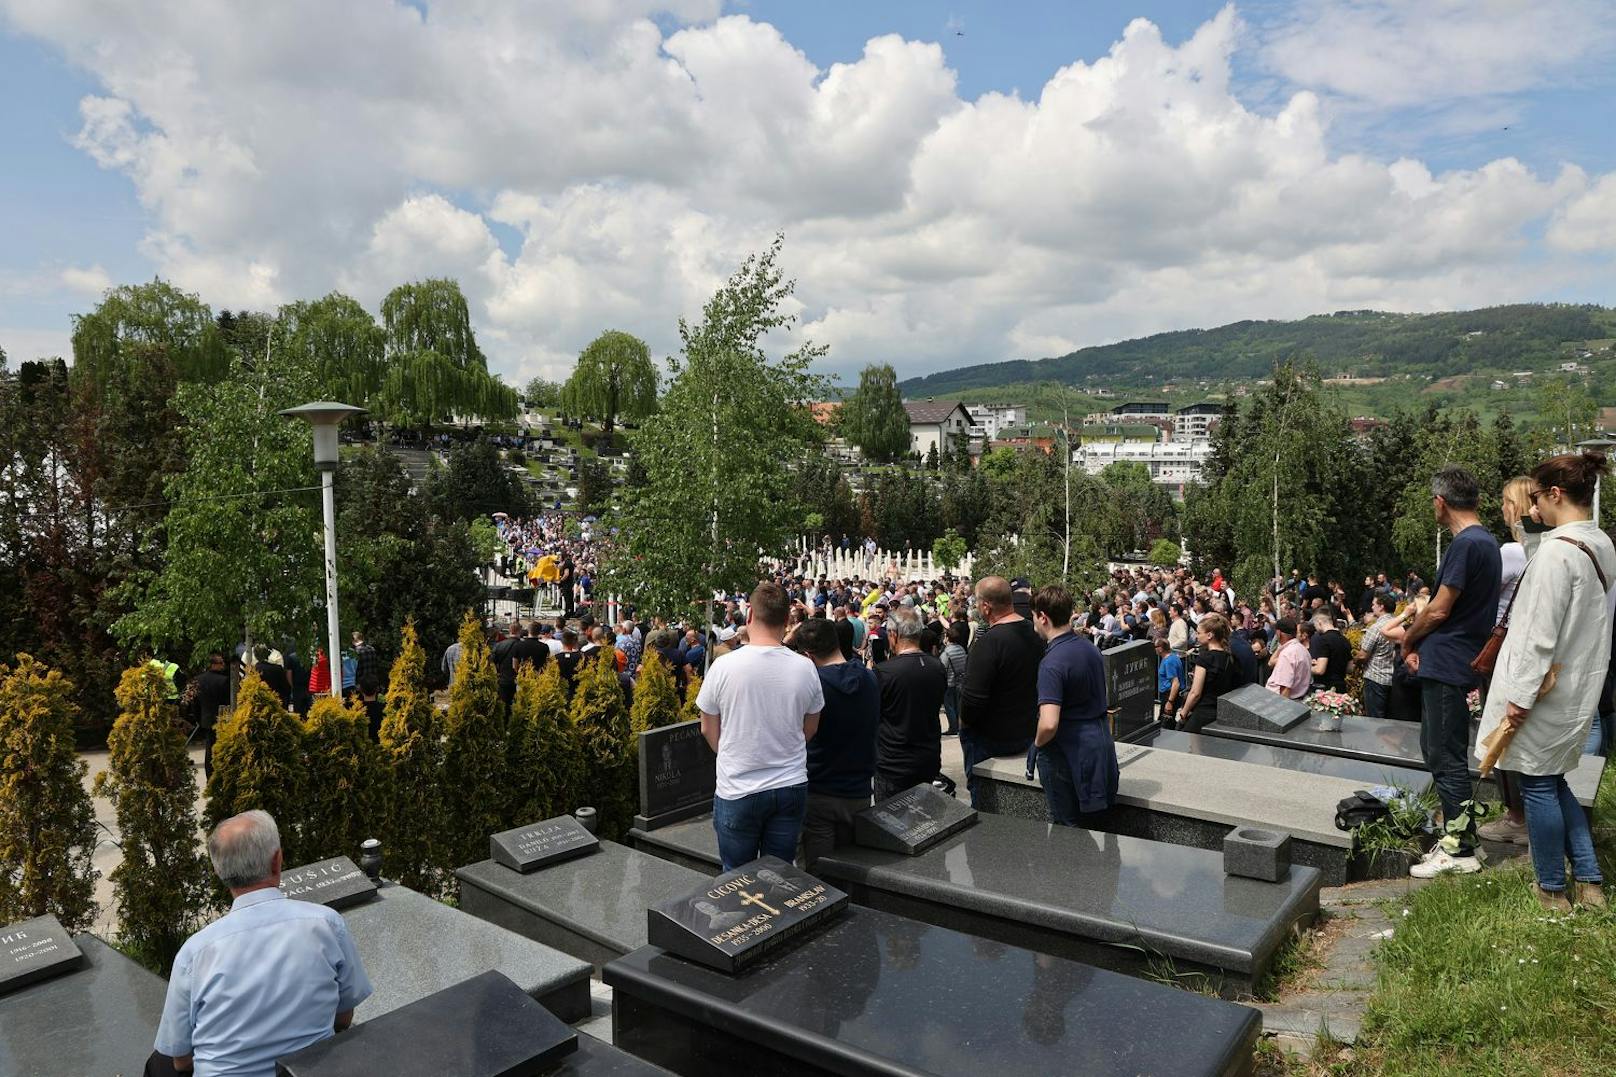 Sturms Trainerlegende Ivica Osim wurde am 14. Mai 2022 in Sarajevo begraben.